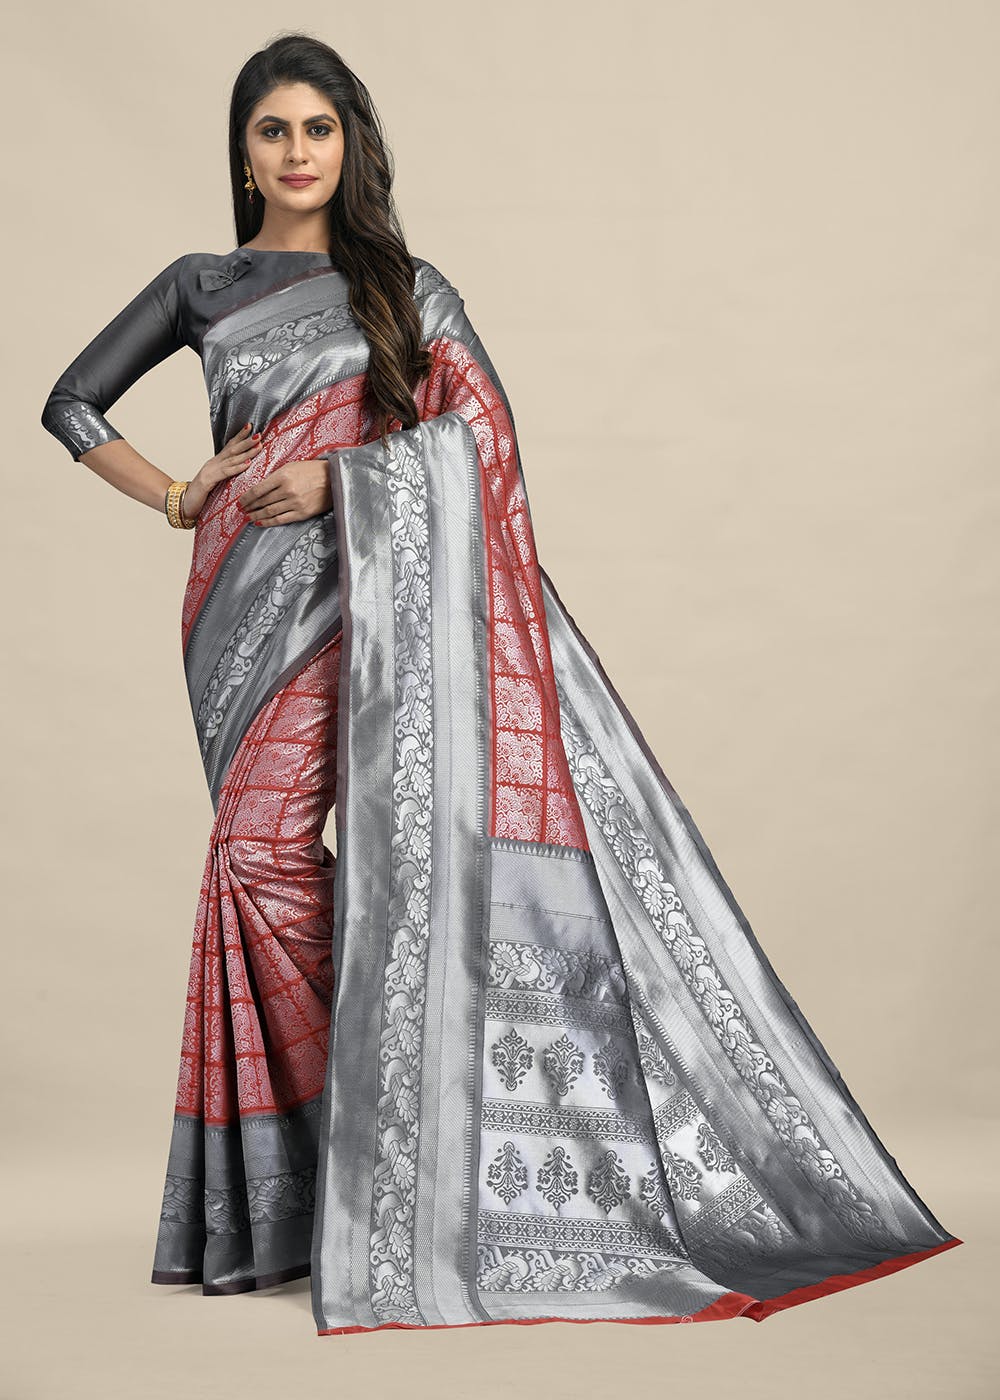 kanjivaram silk saree draping perfectly step by step for beginners |  kanjivaram silk saree wearing - YouTube